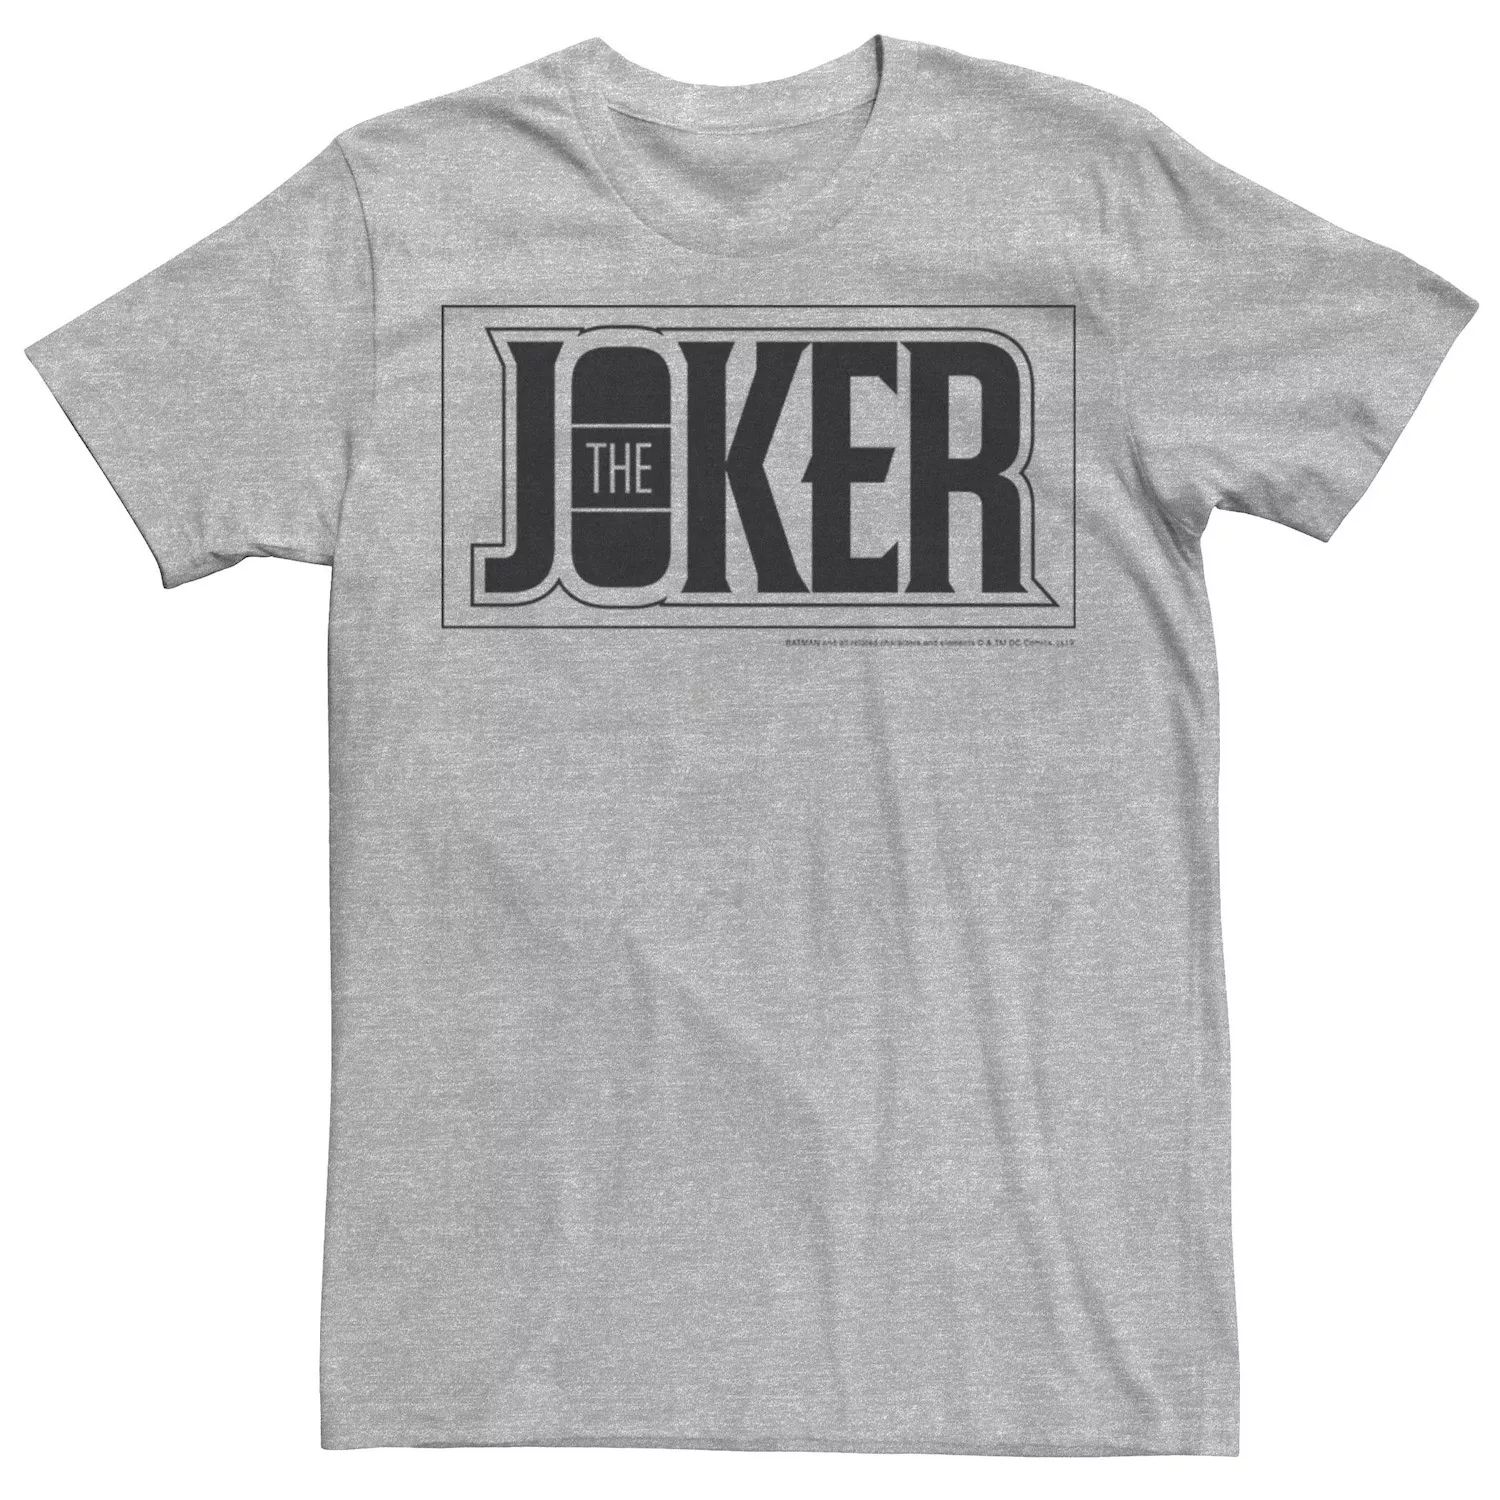 цена Мужская футболка с плакатом и жирным текстом The Joker DC Comics